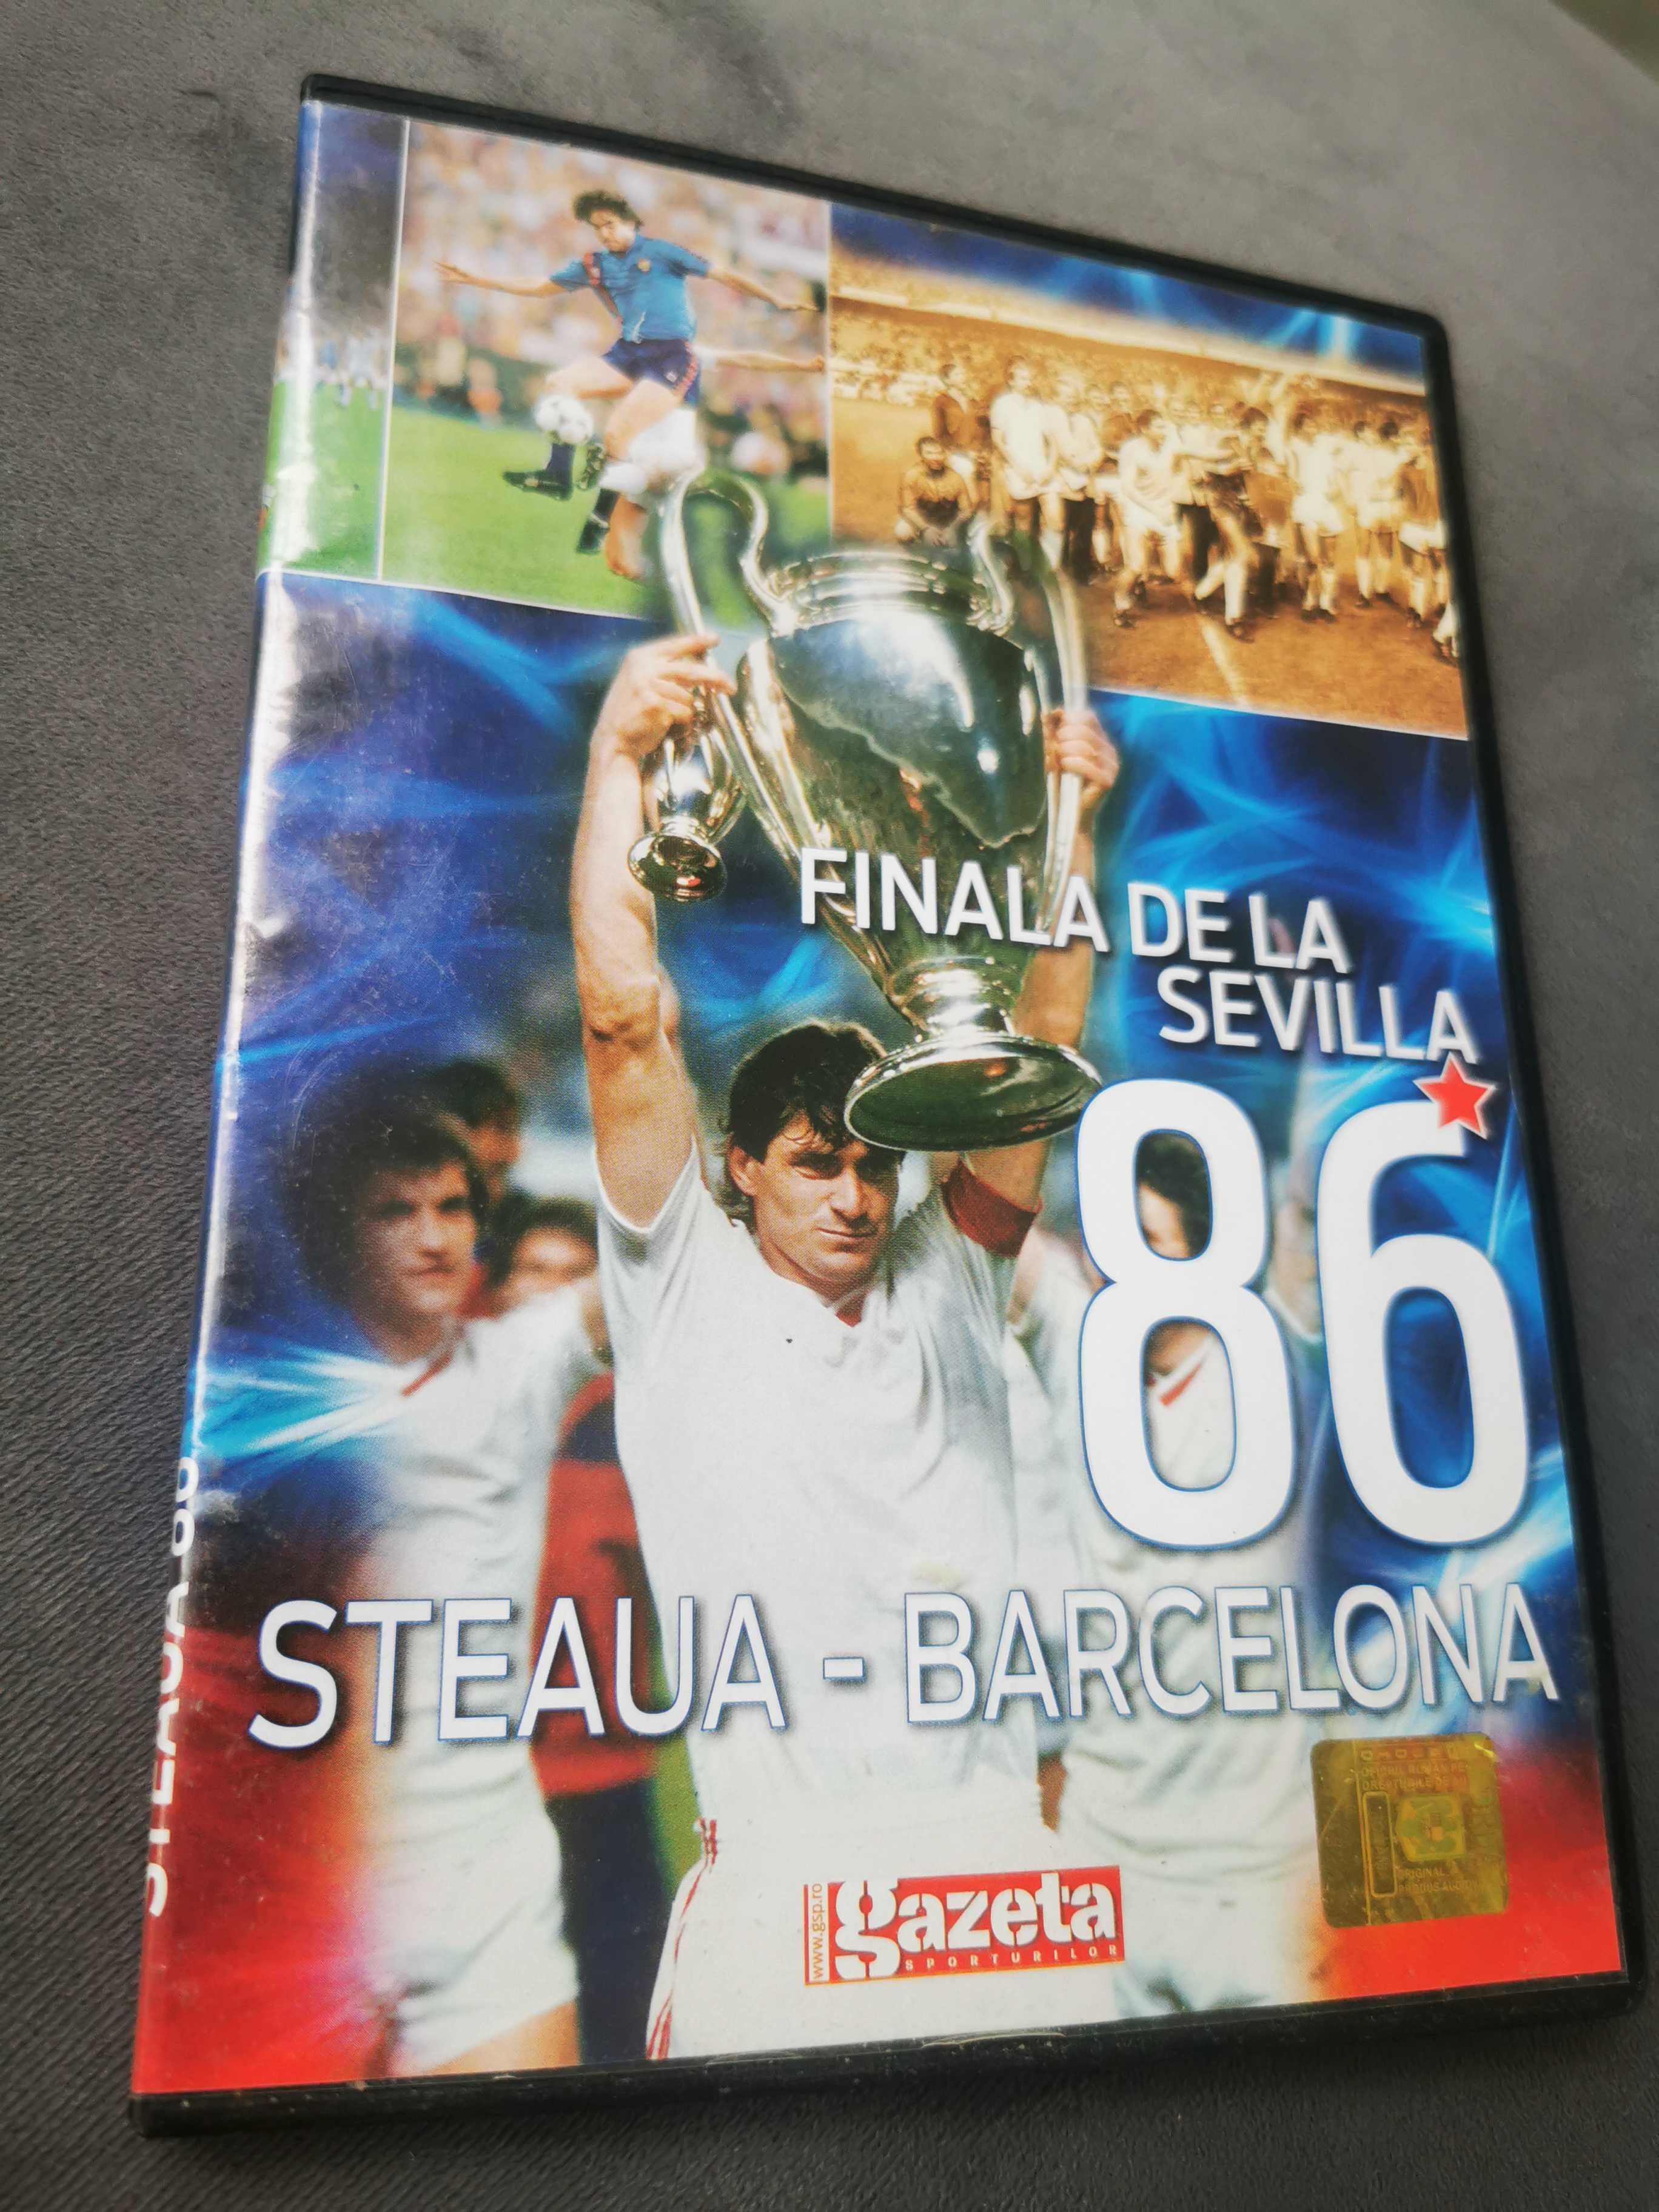 Finala de la Sevilia Steaua Barcelona 1986